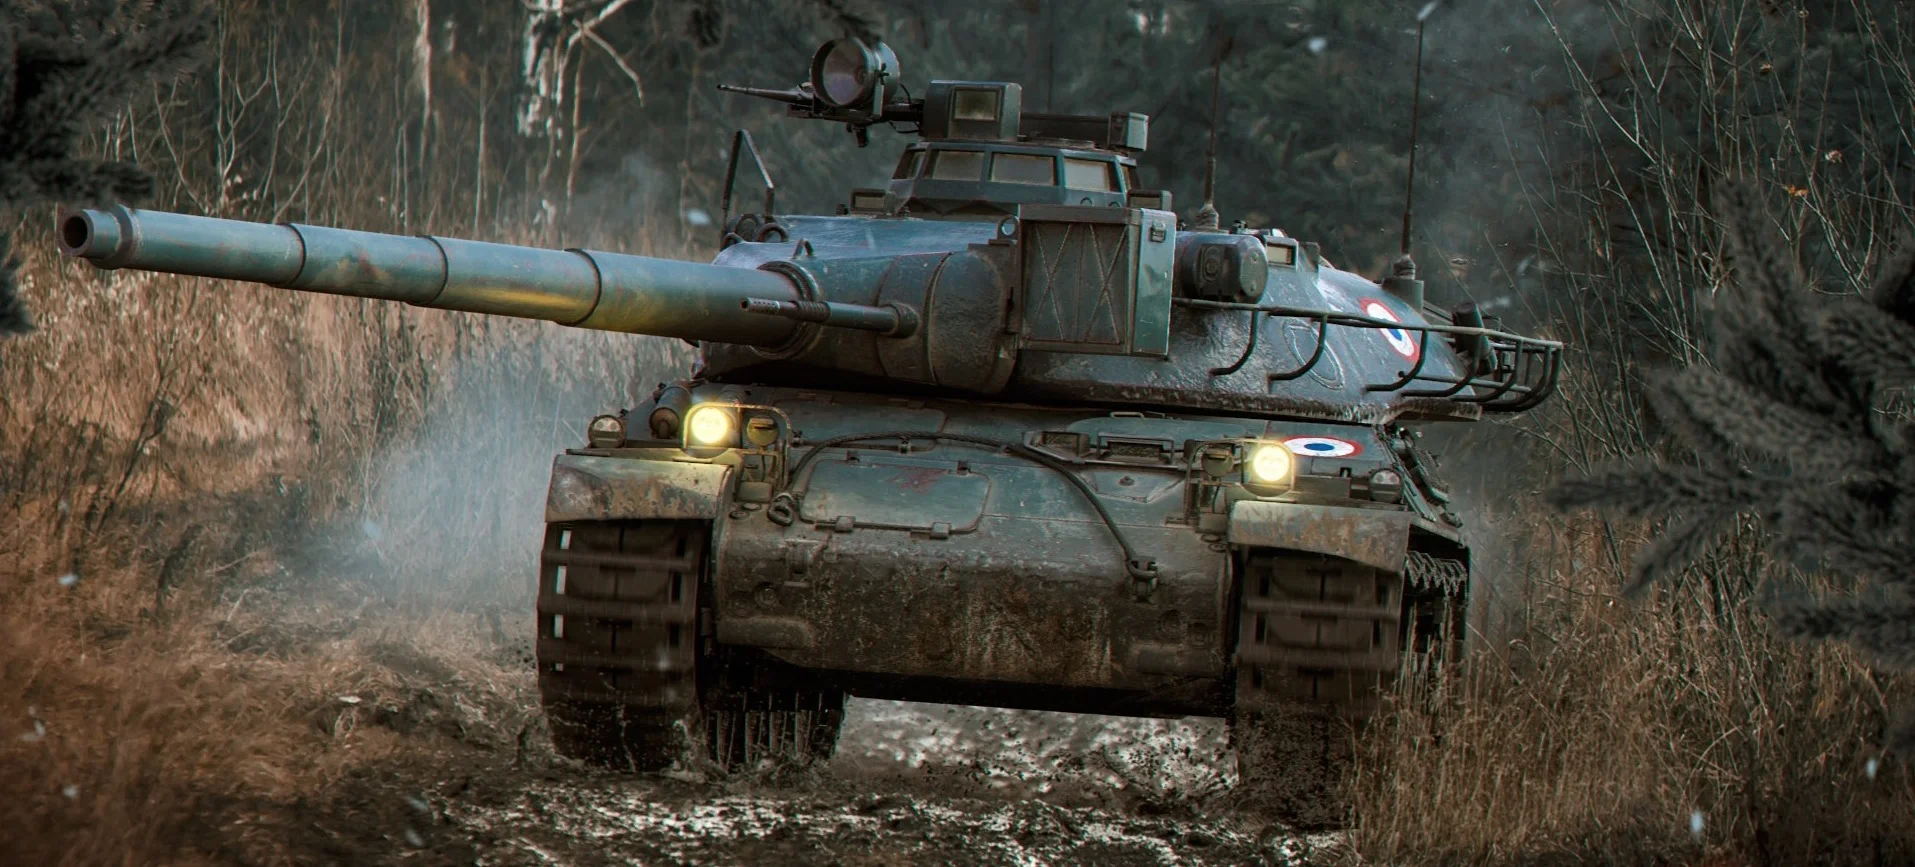 Польские танки, новые боевые задачи и колесная техника. В World of Tanks грядут большие обновления - фото 1